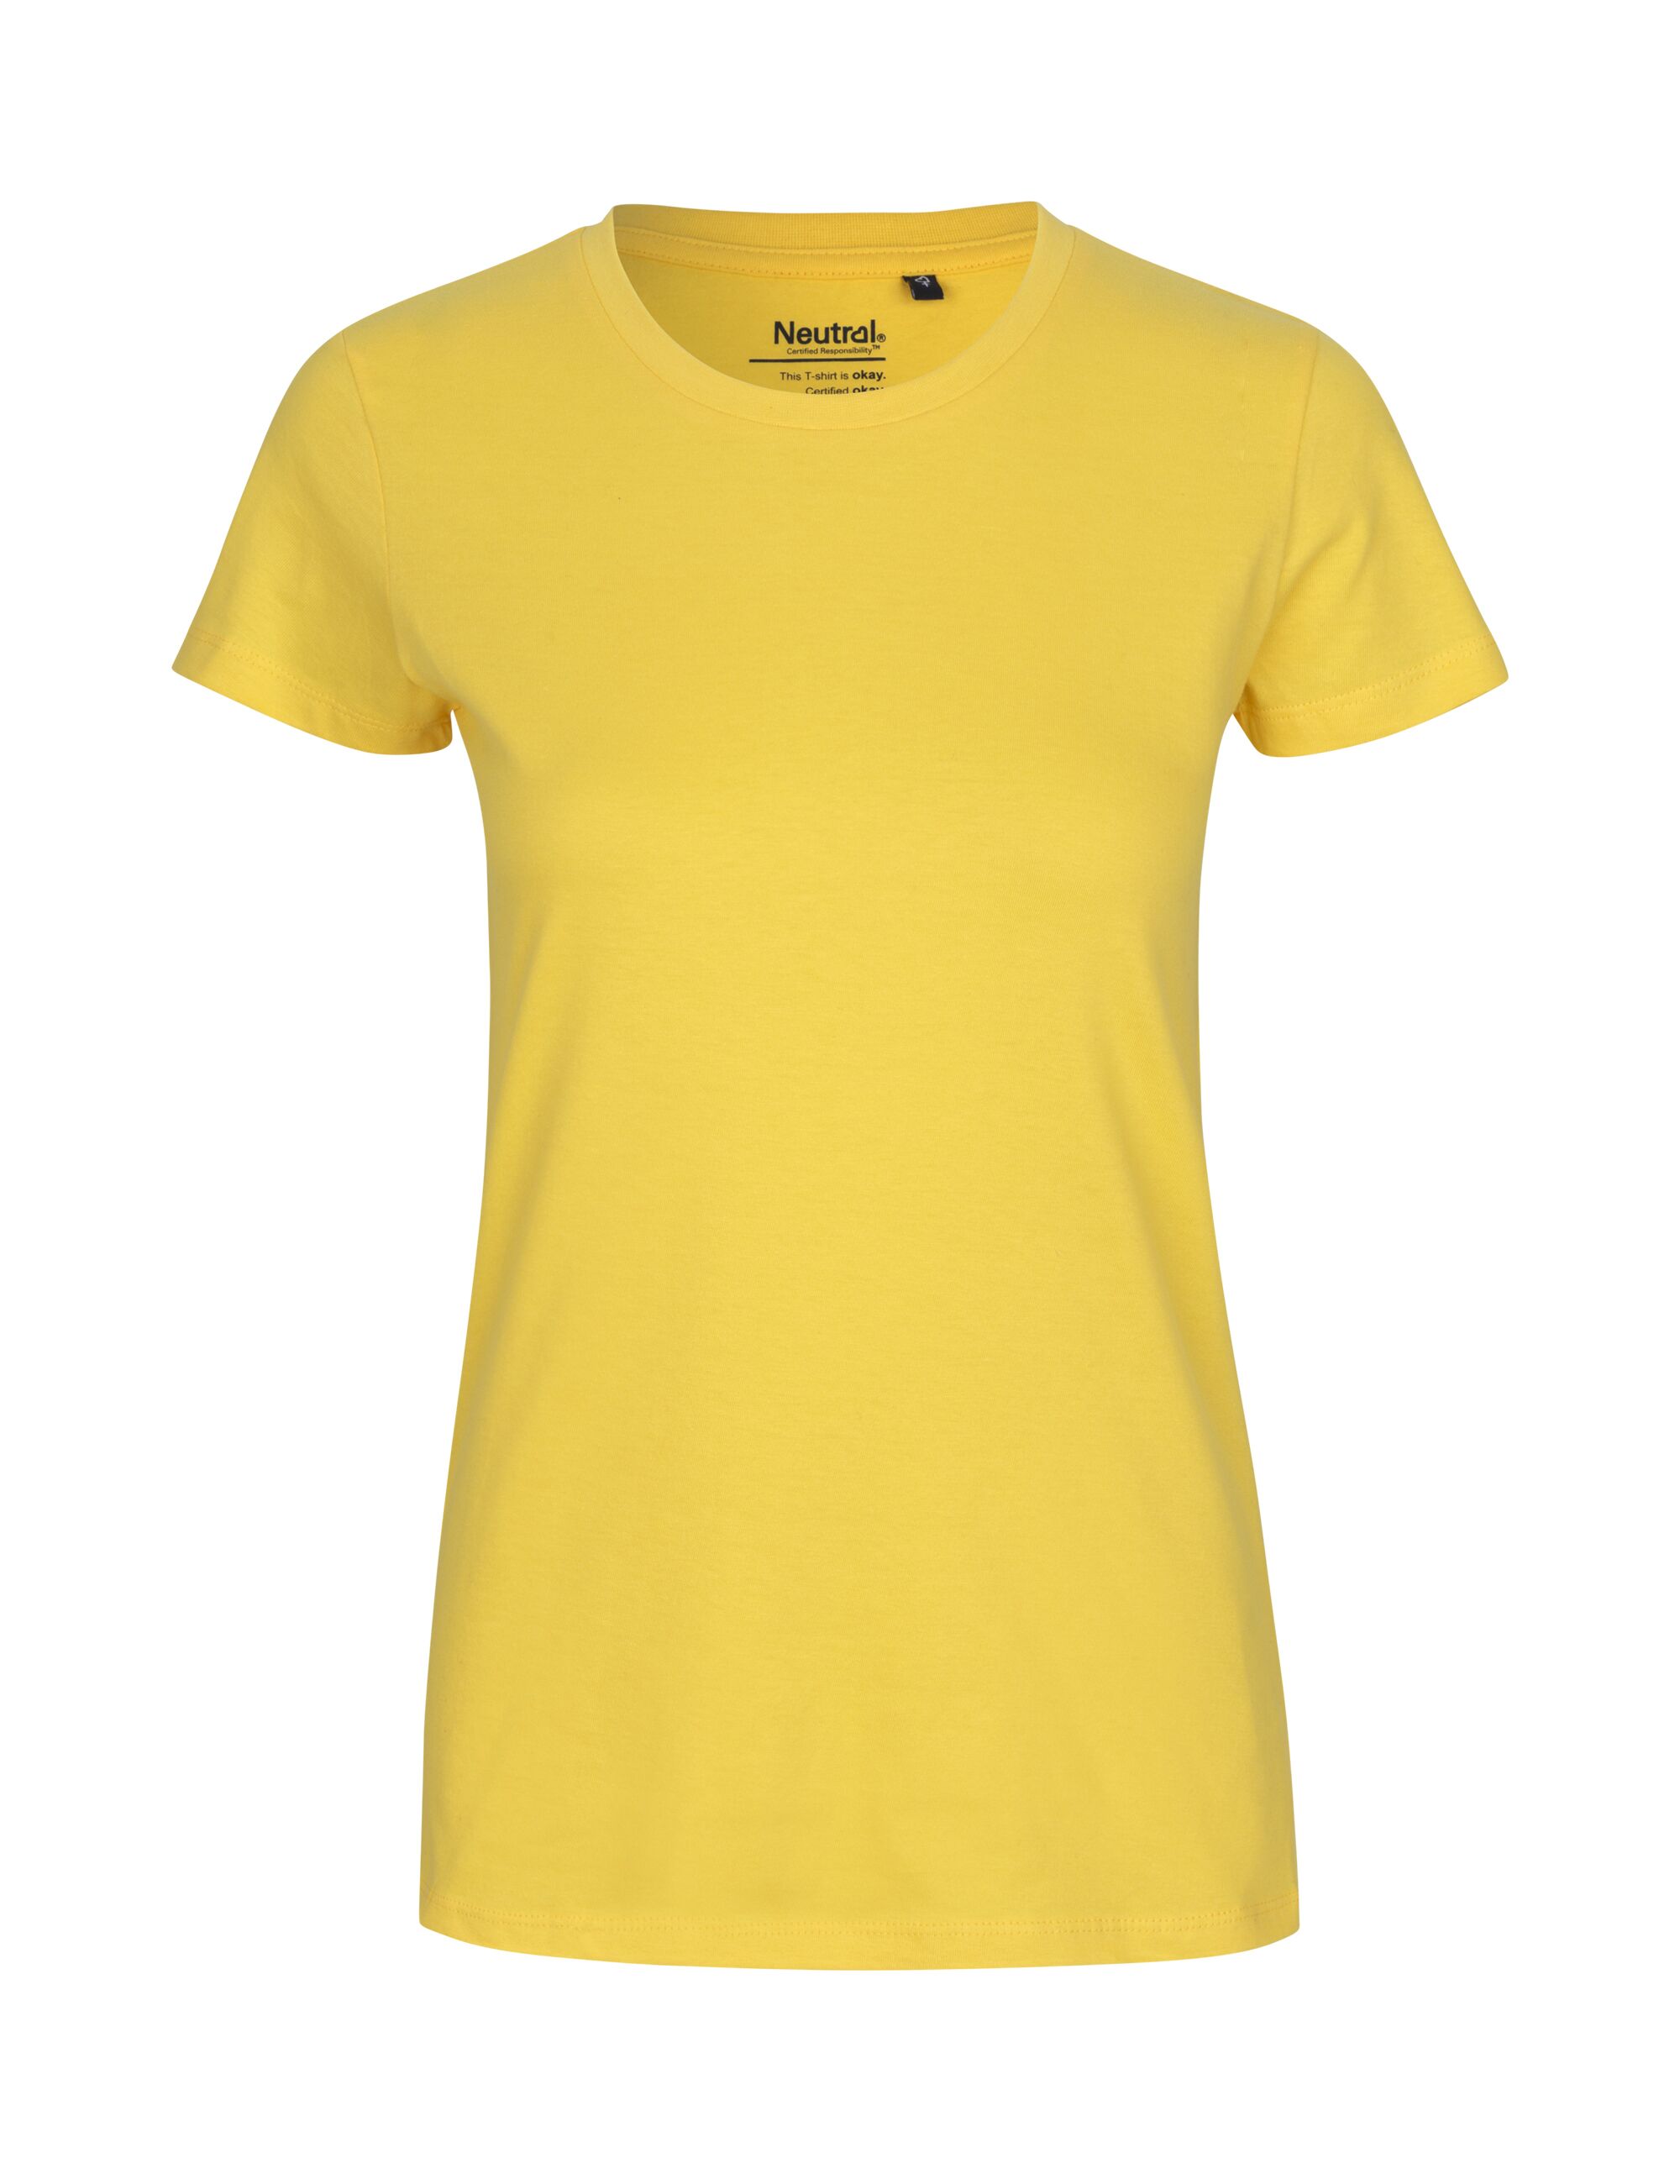 T-Shirt Ladies Classic aus Neutral O80001, T-Shirt Damen Baumwolle Bio